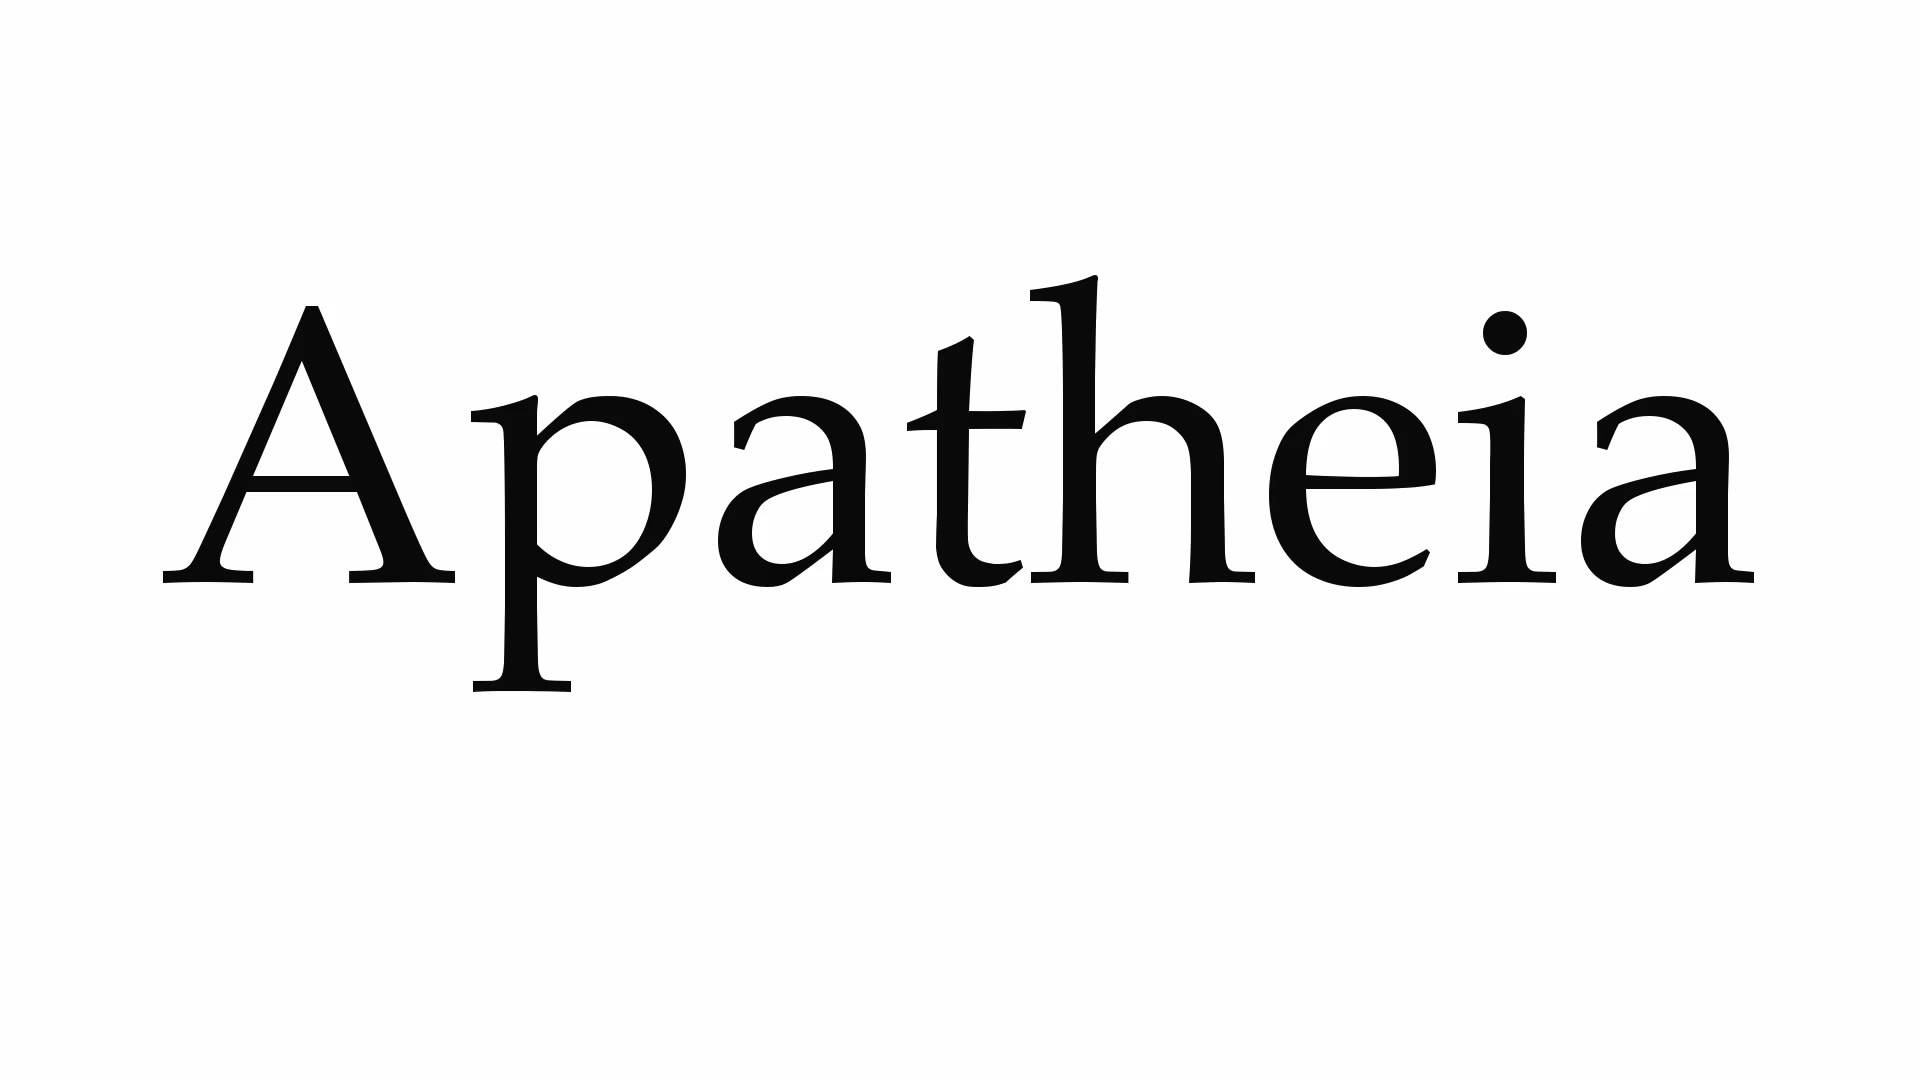 Apathenia #2